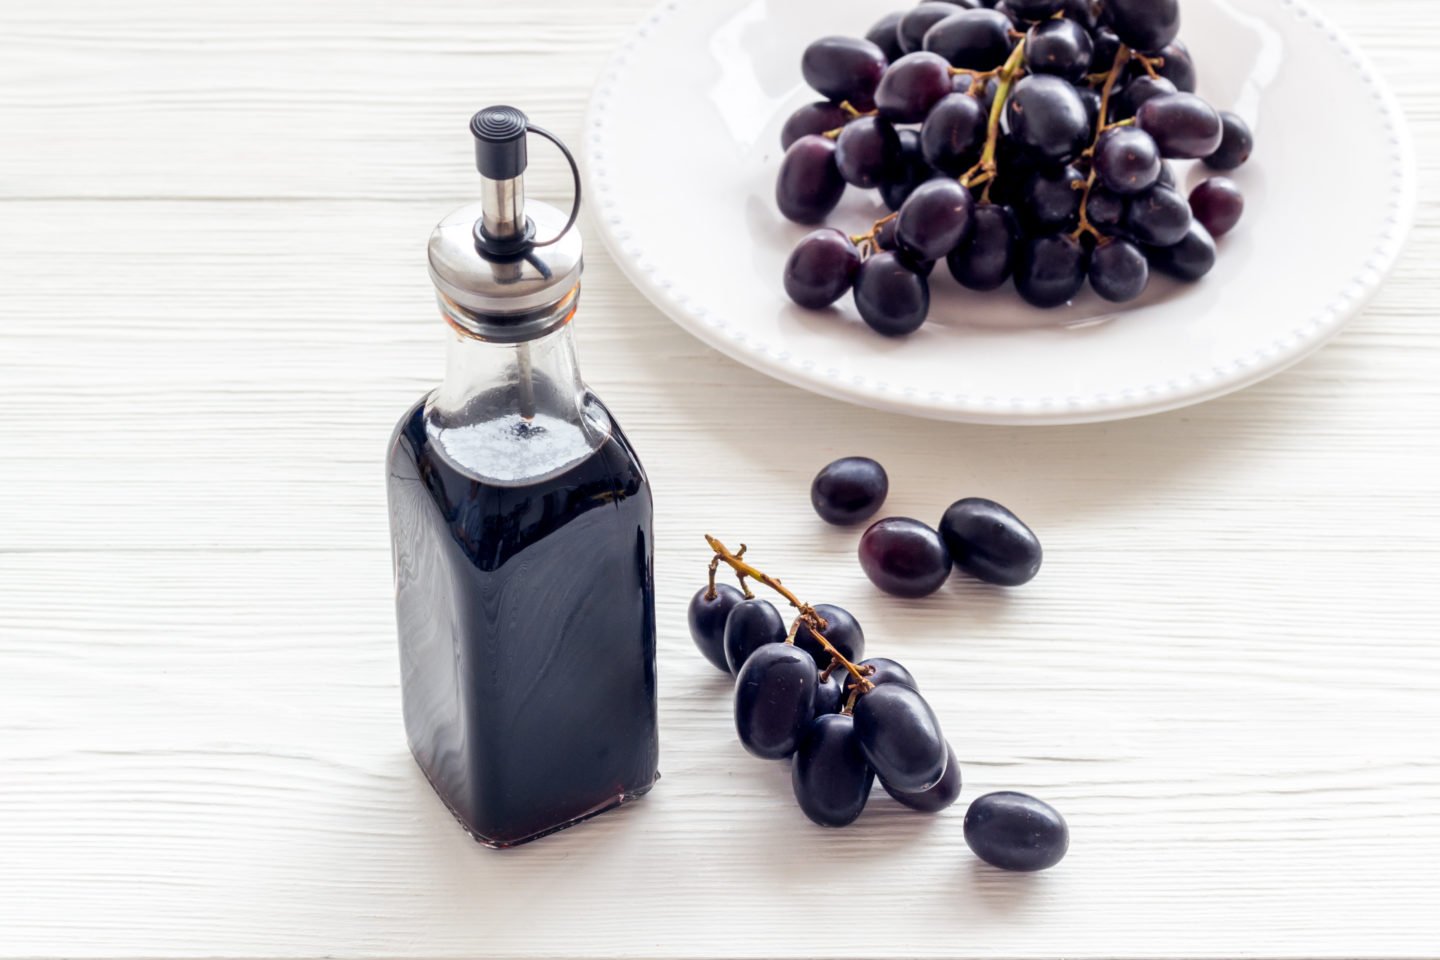 balsamic vinegar bottle and fresh grapes